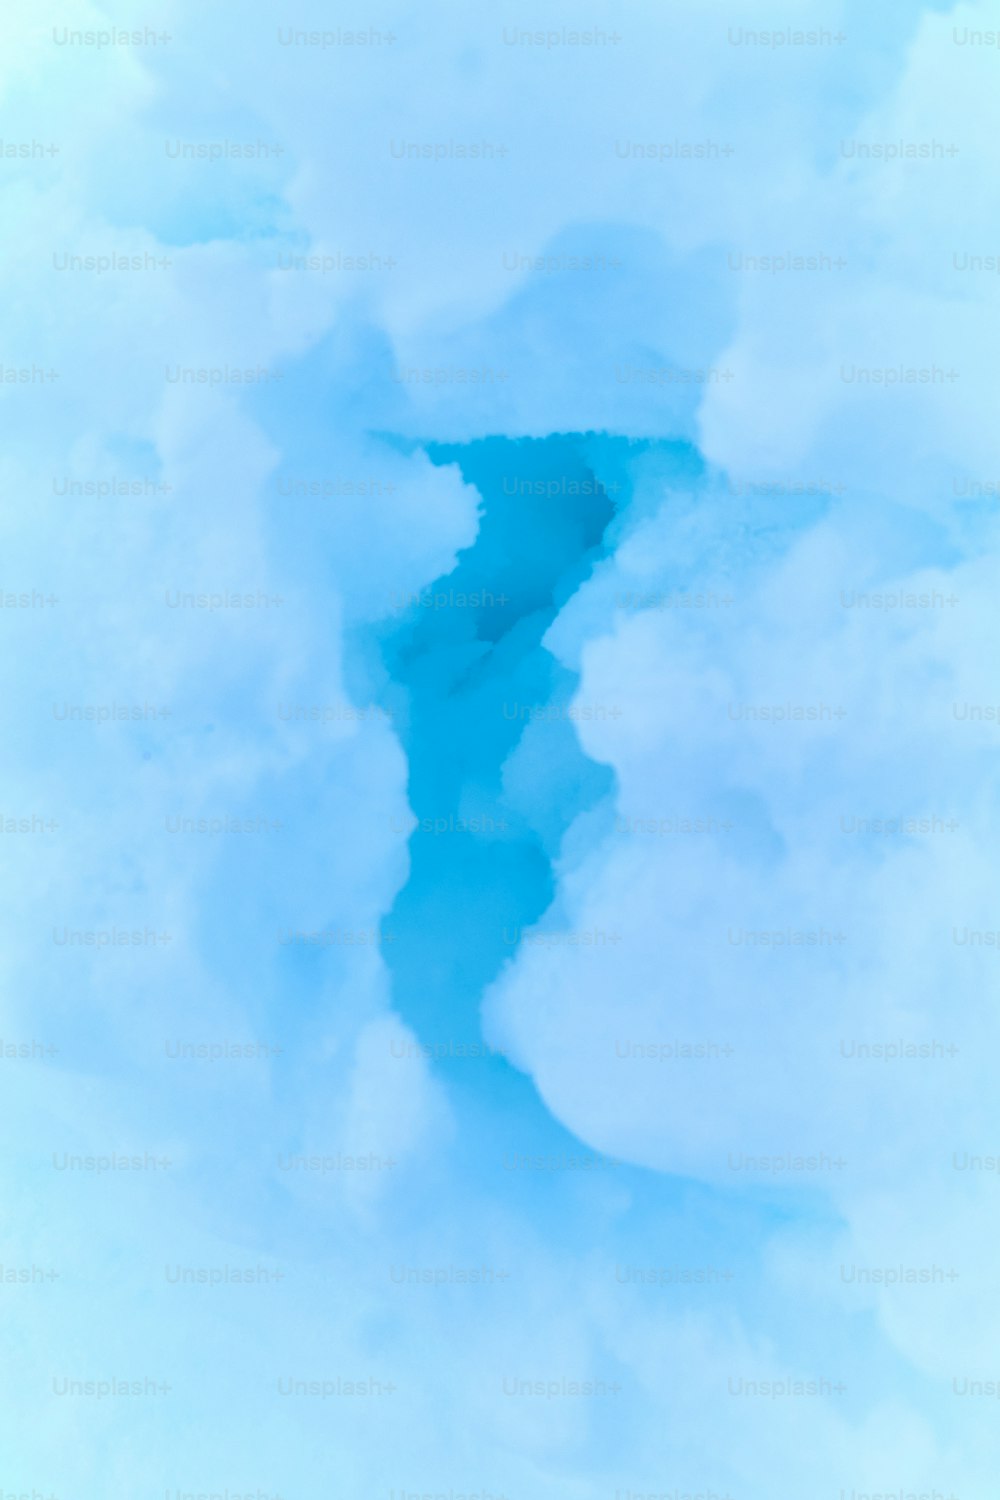 um fluxo de água no meio de um céu nublado